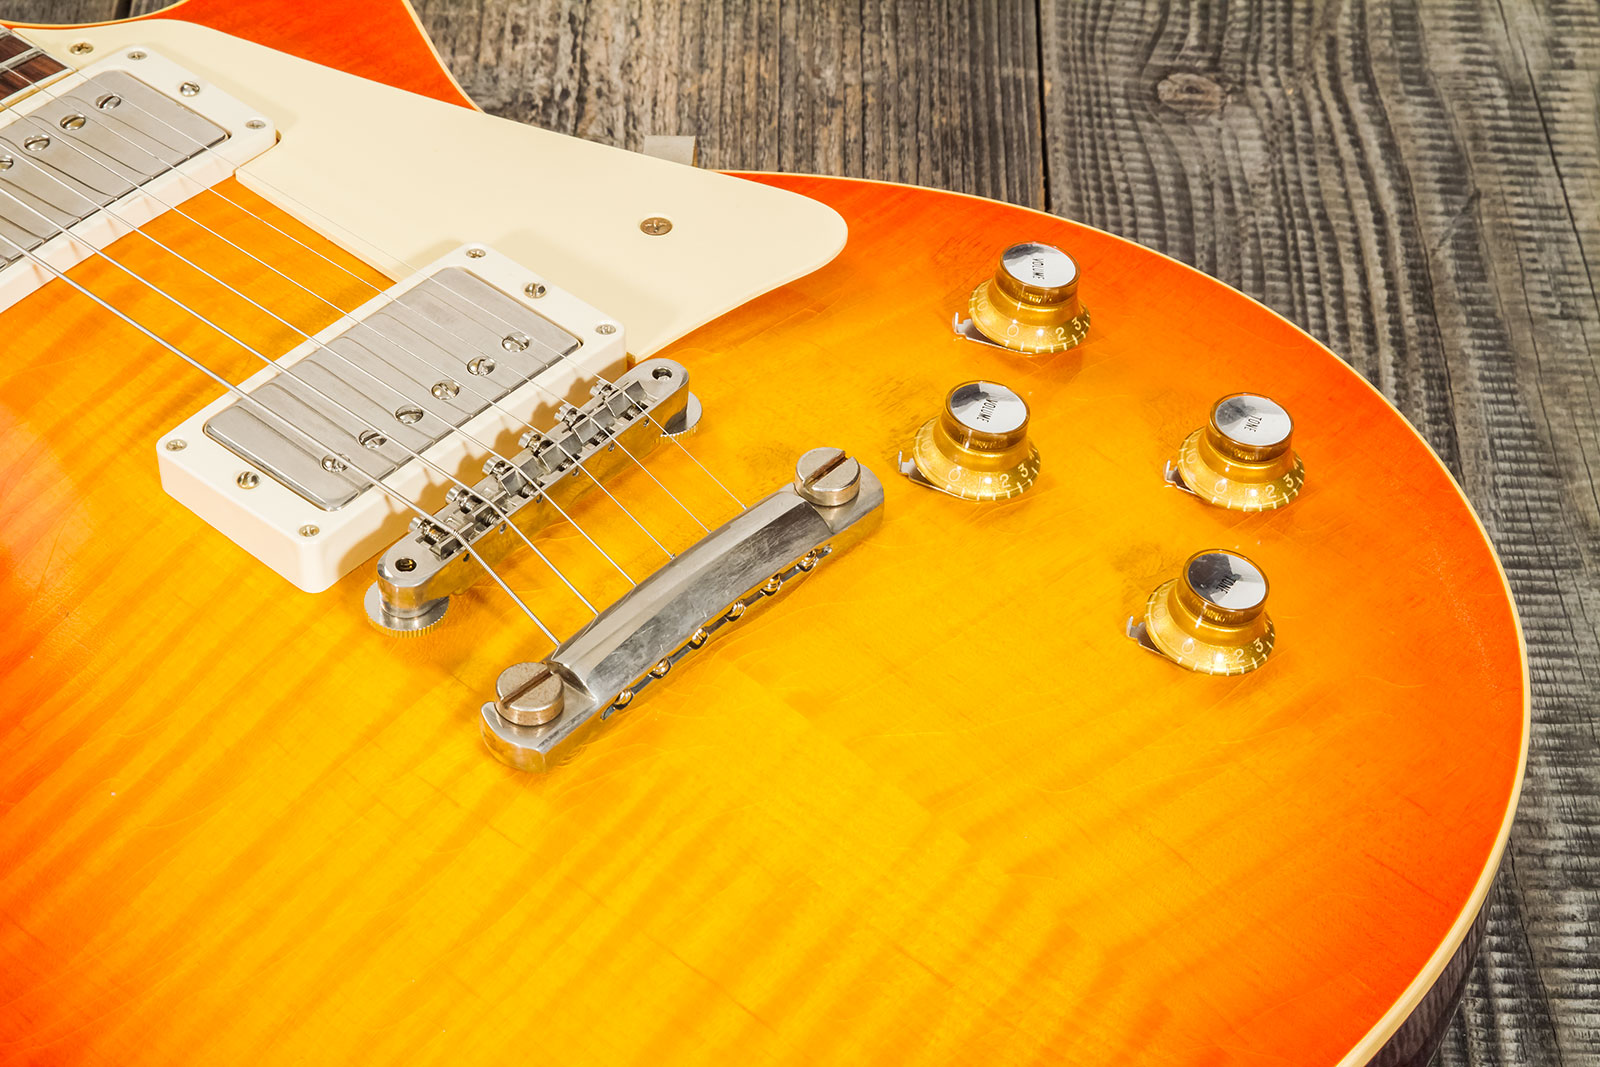 Gibson Custom Shop Murphy Lab Les Paul Standard 1960 Reissue 2h Ht Rw #001189 - Ultra Light Aged Orange Lemon Fade Burst - Guitare Électrique Single C